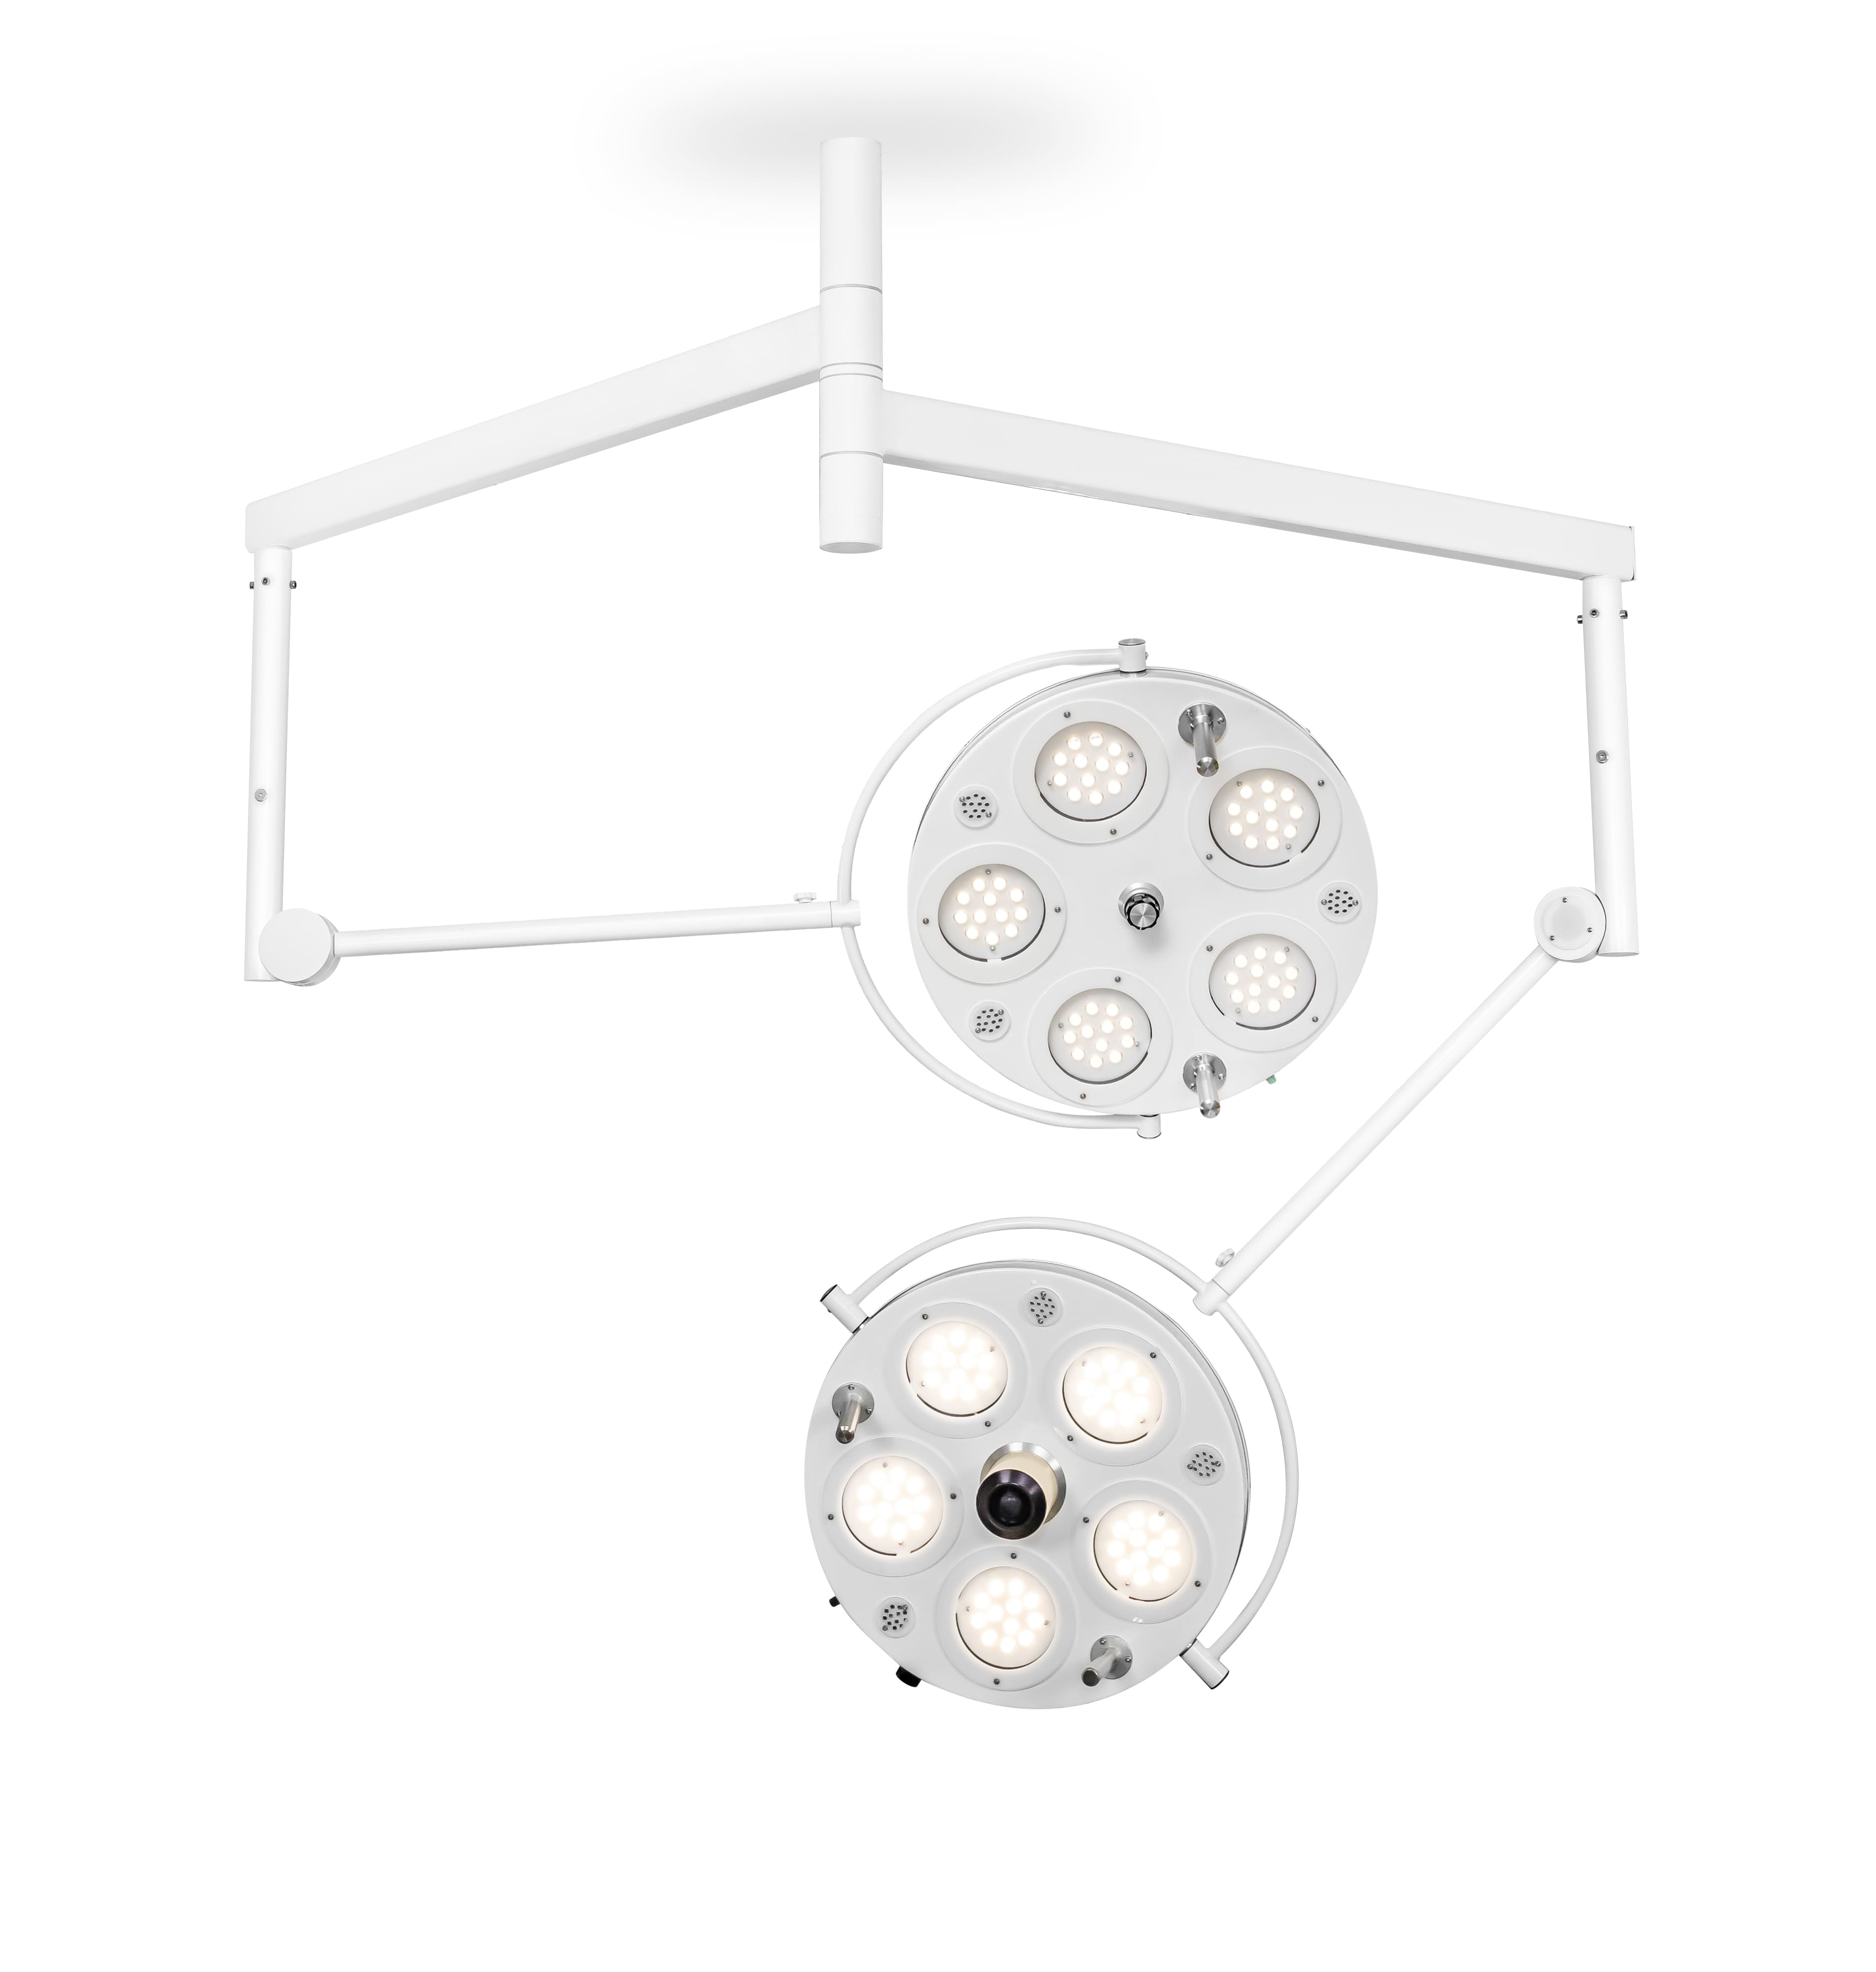 Медицинский двухкупольный хирургический светильник «FotonFly 5М5С», потолочный подвес - FotonFly 5М5С